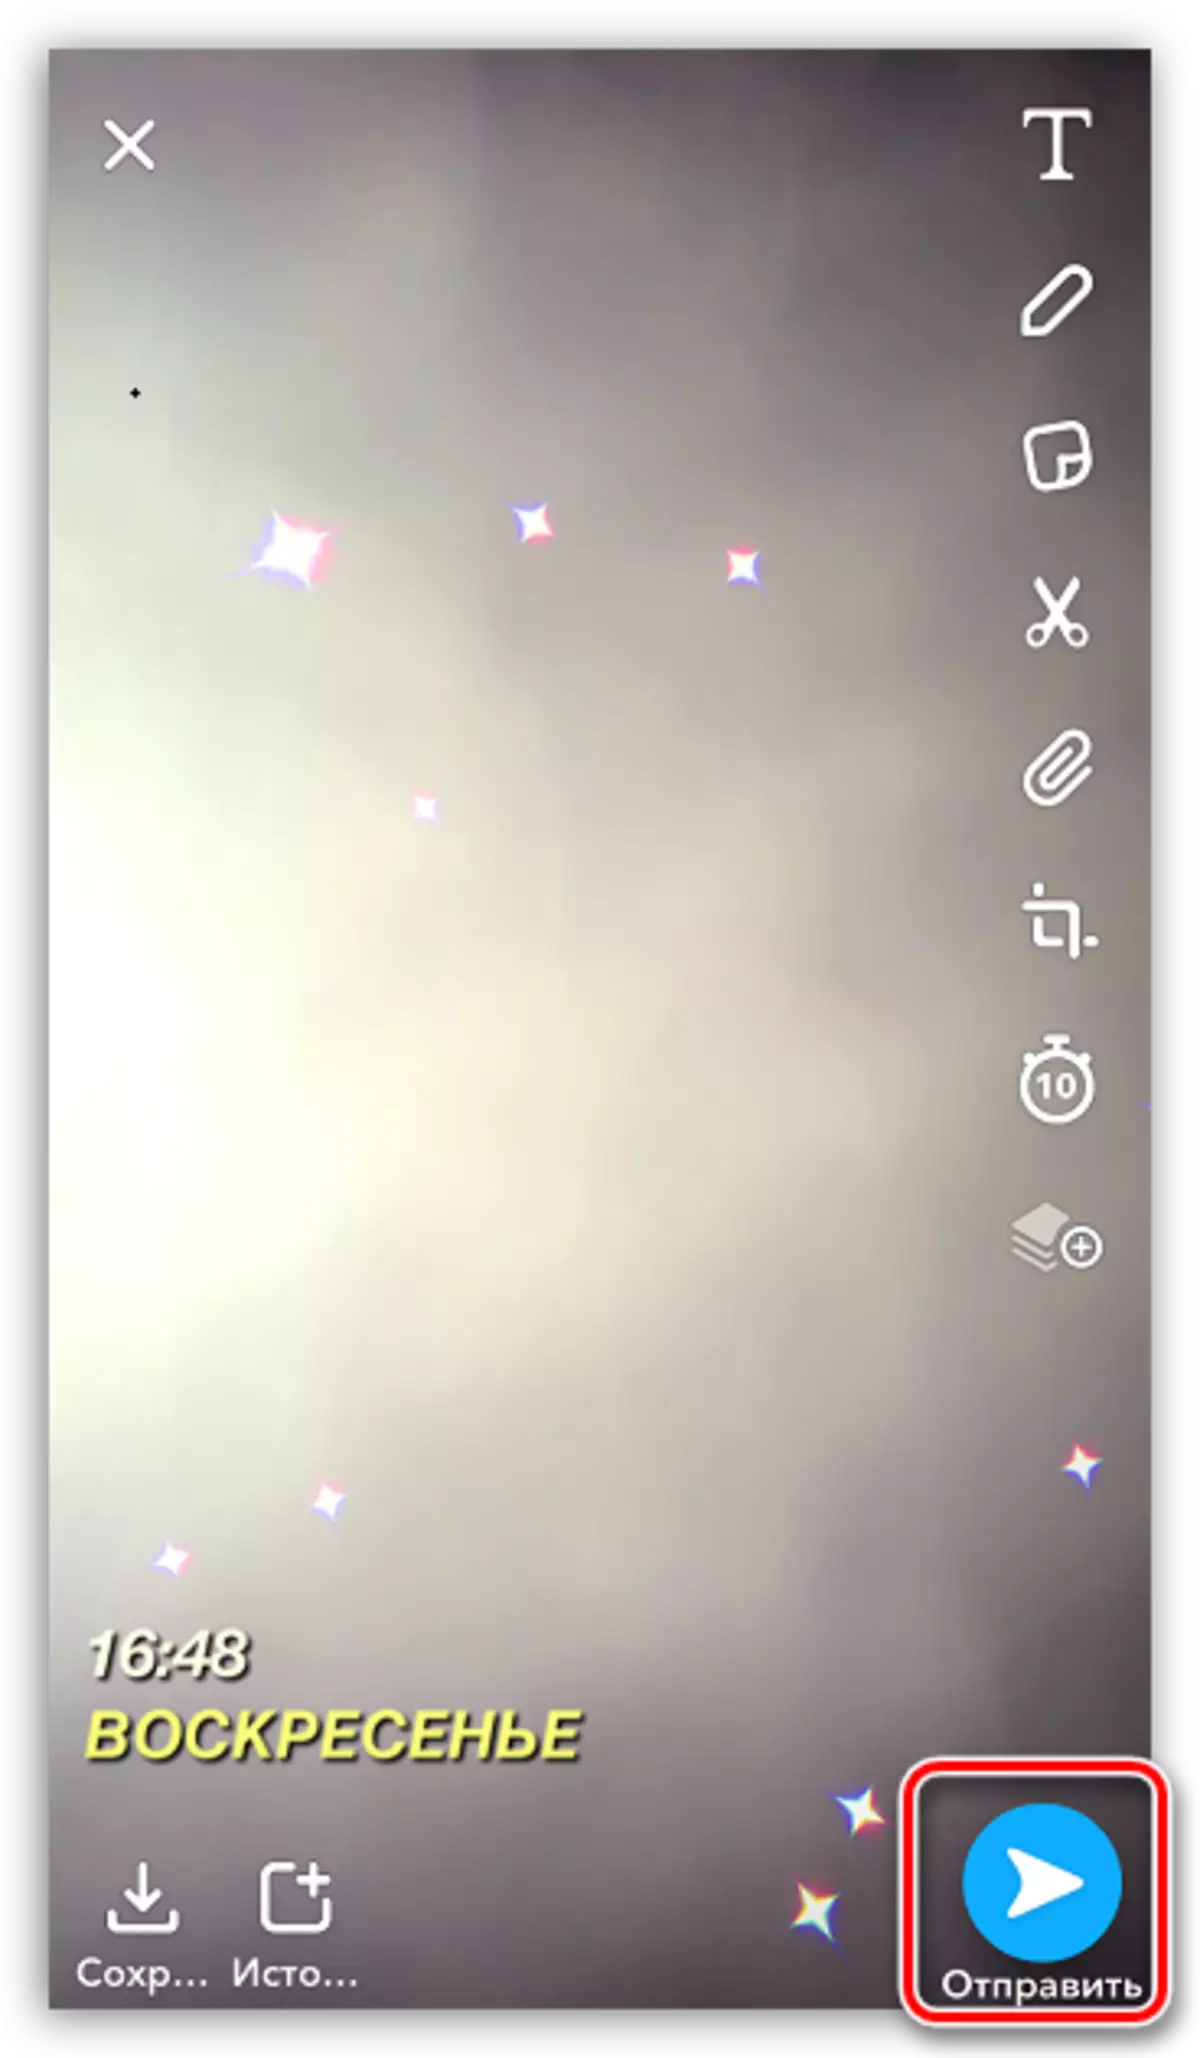 Mittenti snap lill-ħbieb fl-applikazzjoni Snapchat fuq l-iPhone